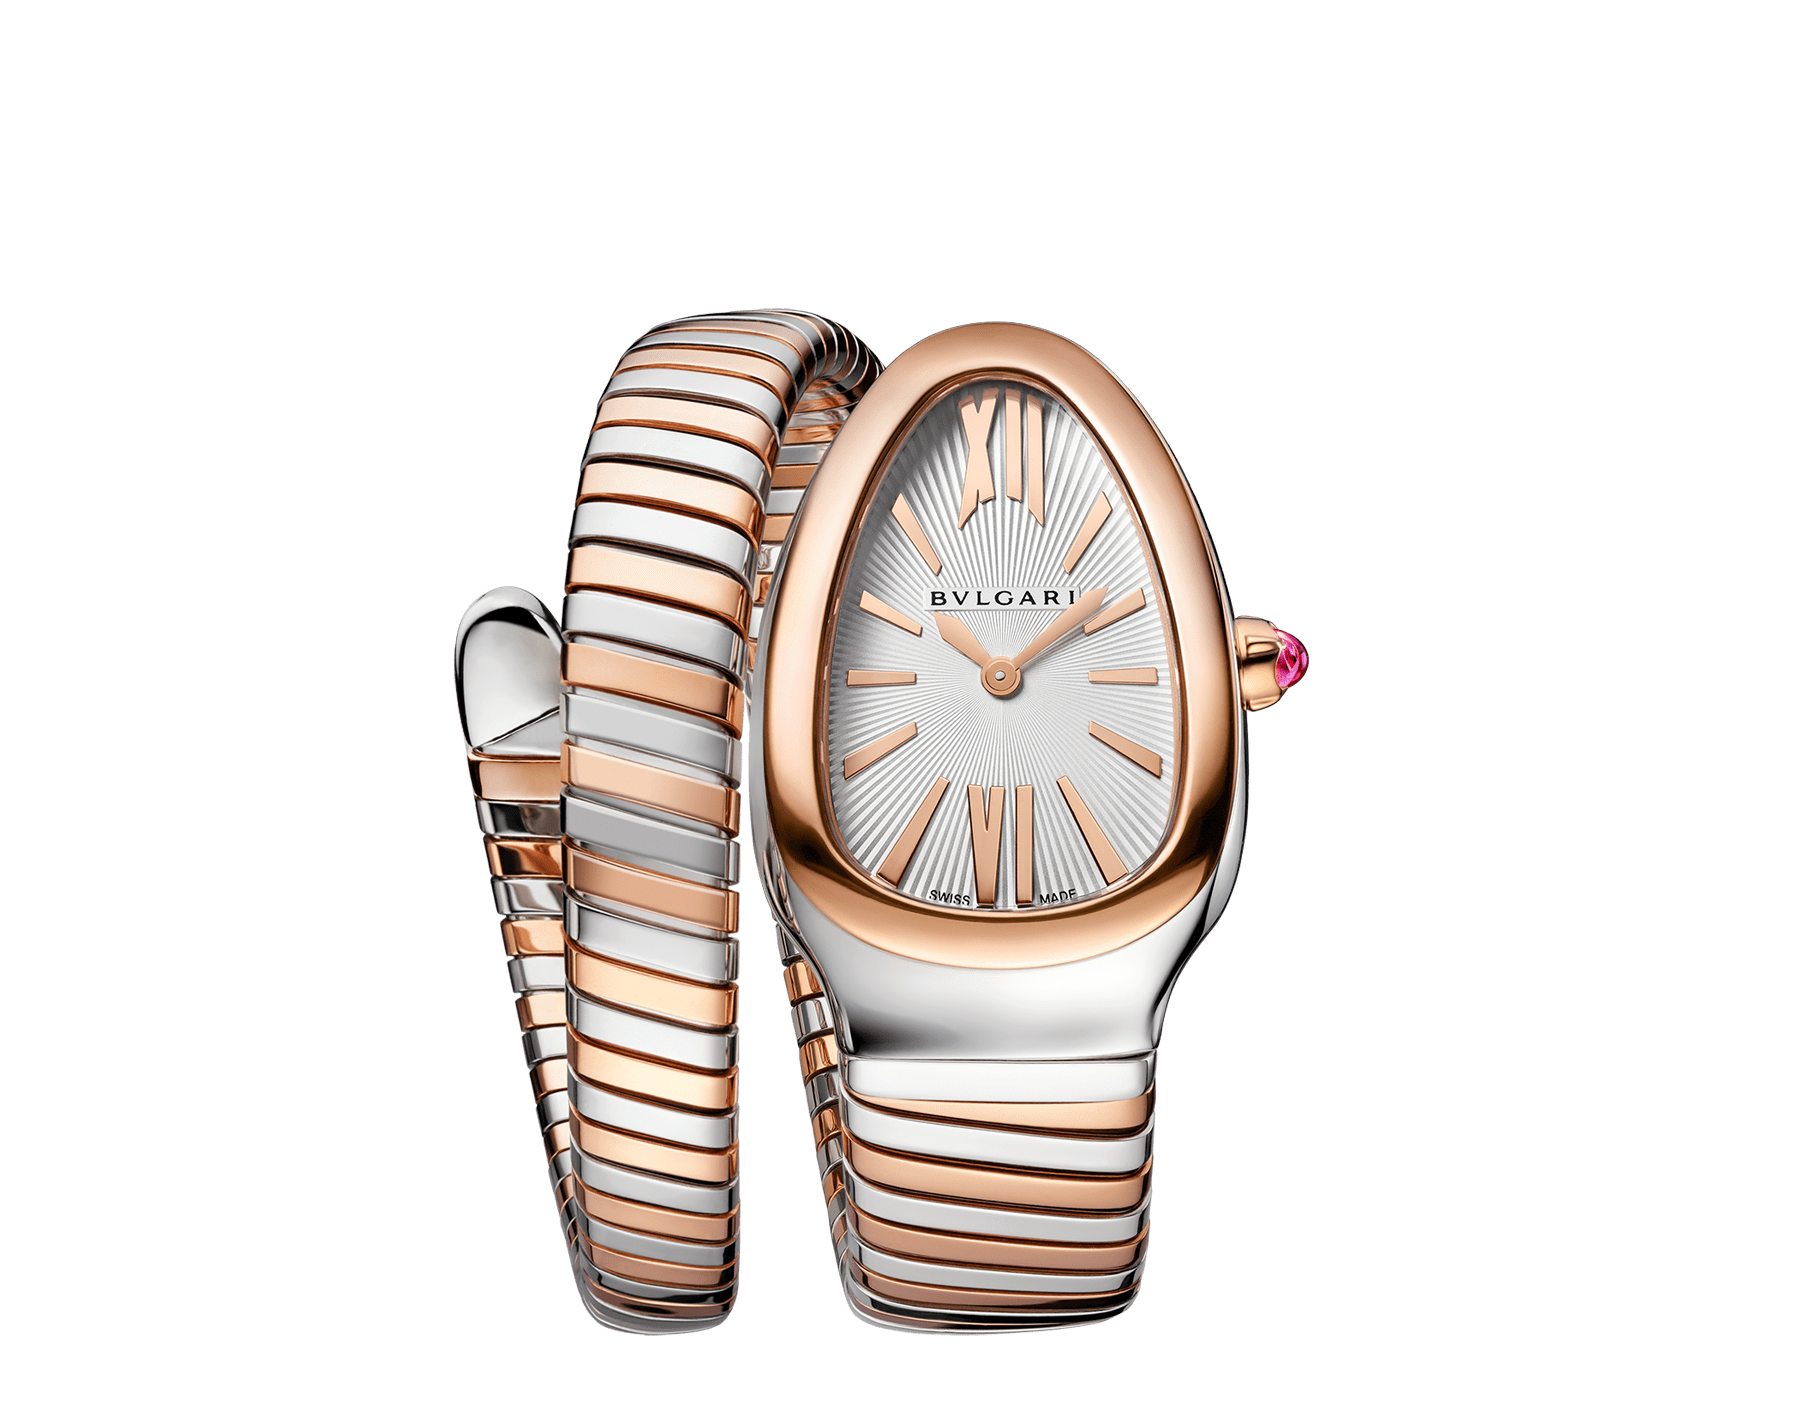 Einfach geschwungene Serpenti Tubogas Uhr aus 18 Karat Roségold und Edelstahl mit weißem Opalin-Zifferblatt mit Sonnenguillochierung. Wasserdicht bis 30 Meter 103708 image 1